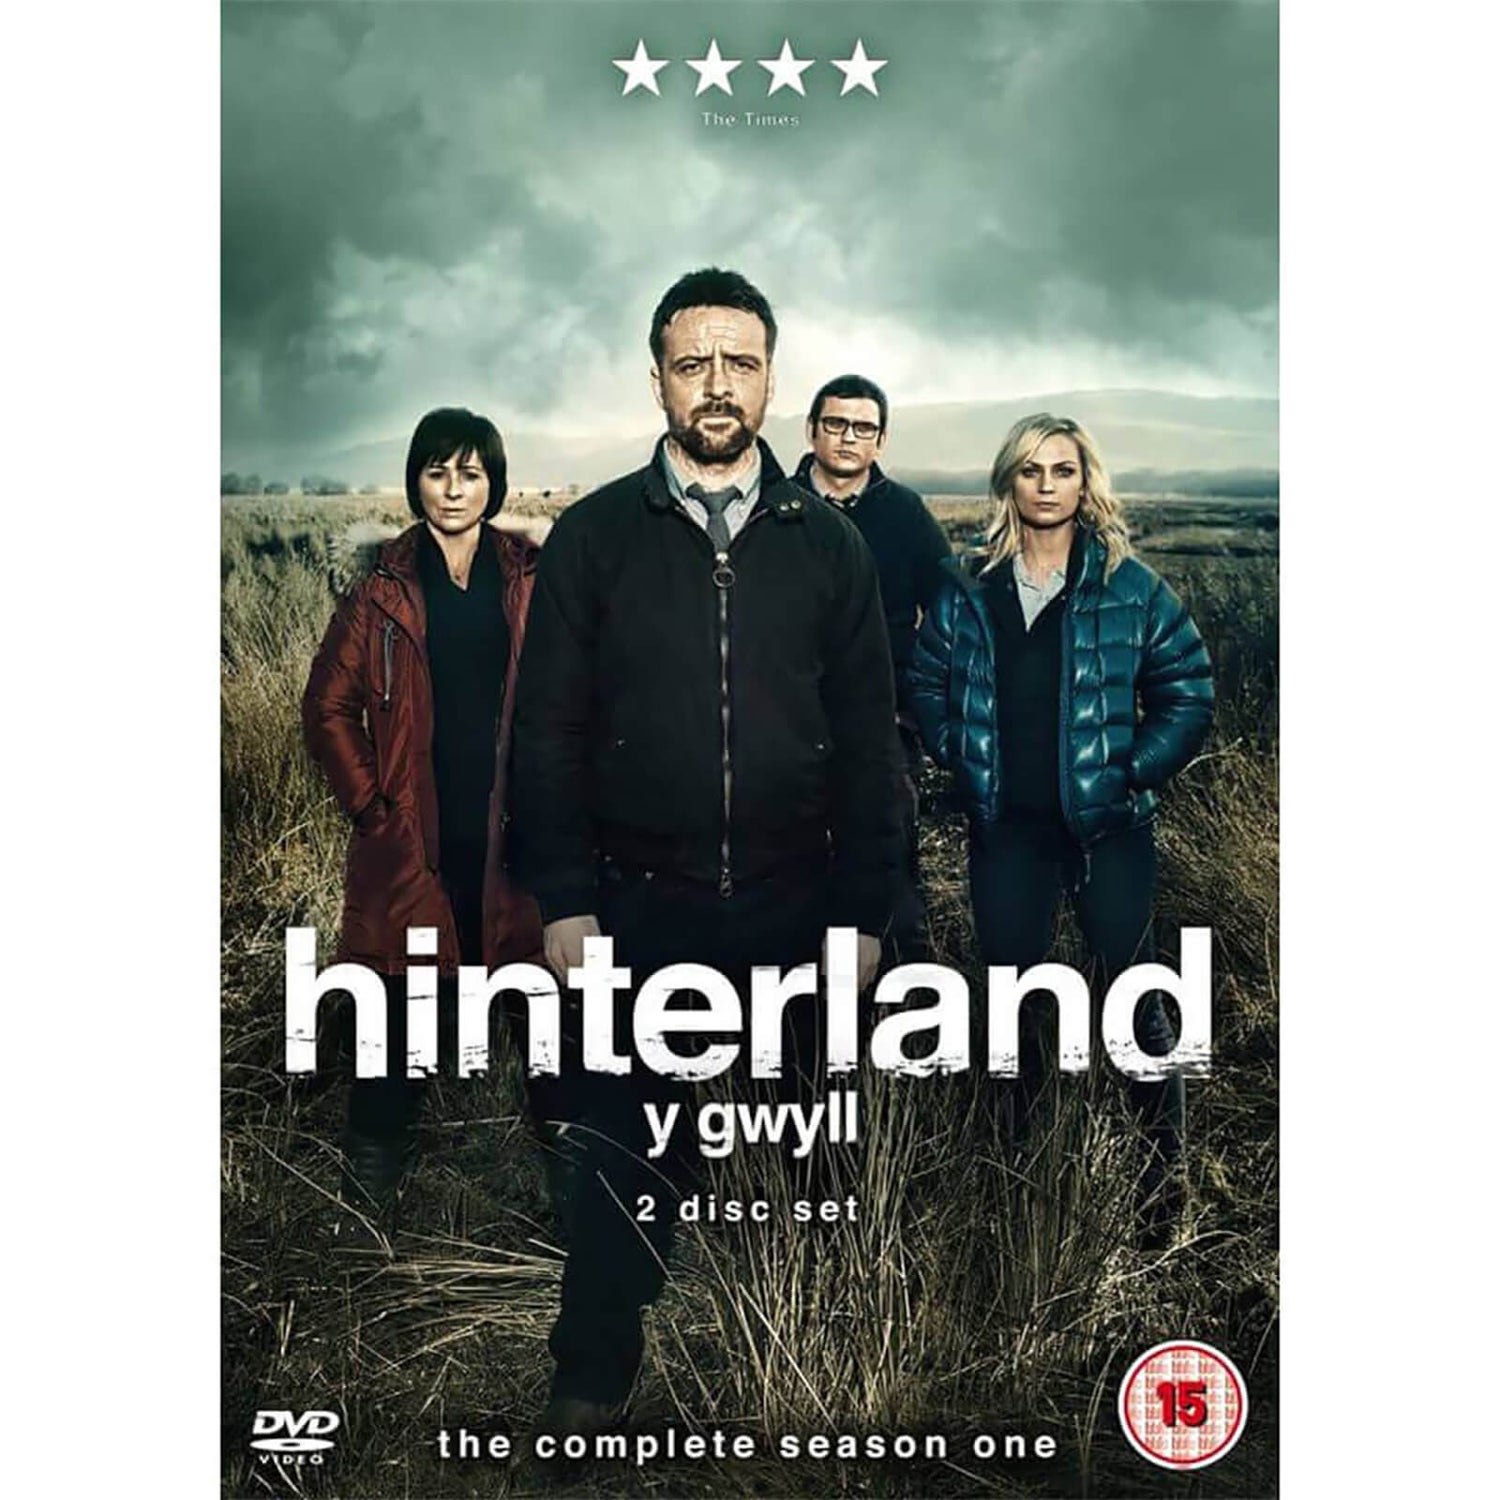 Hinterland (Y Gwyll) Series 1 DVD